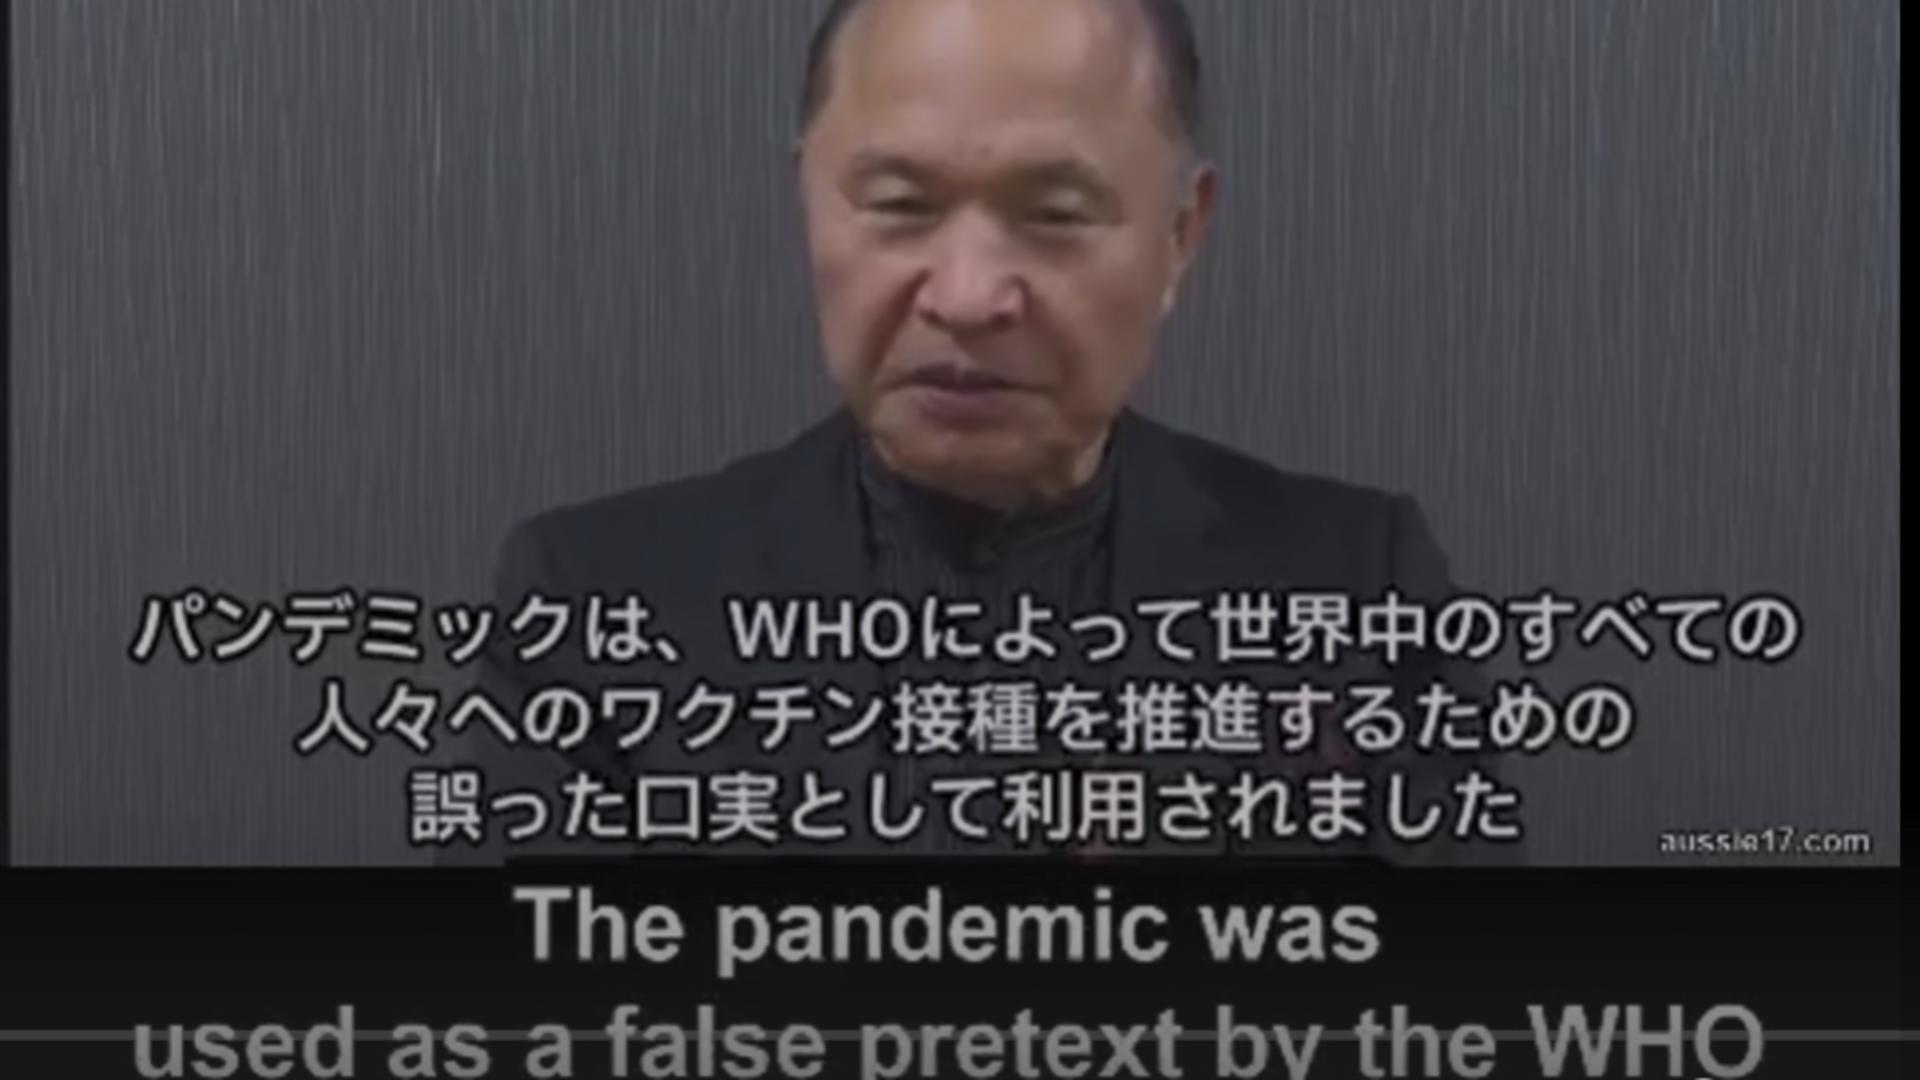 Profesor emerit la Universitatea din Osaka: “Pandemia a fost folosită ca pretext fals de către OMS pentru a stimula vaccinarea tuturor”